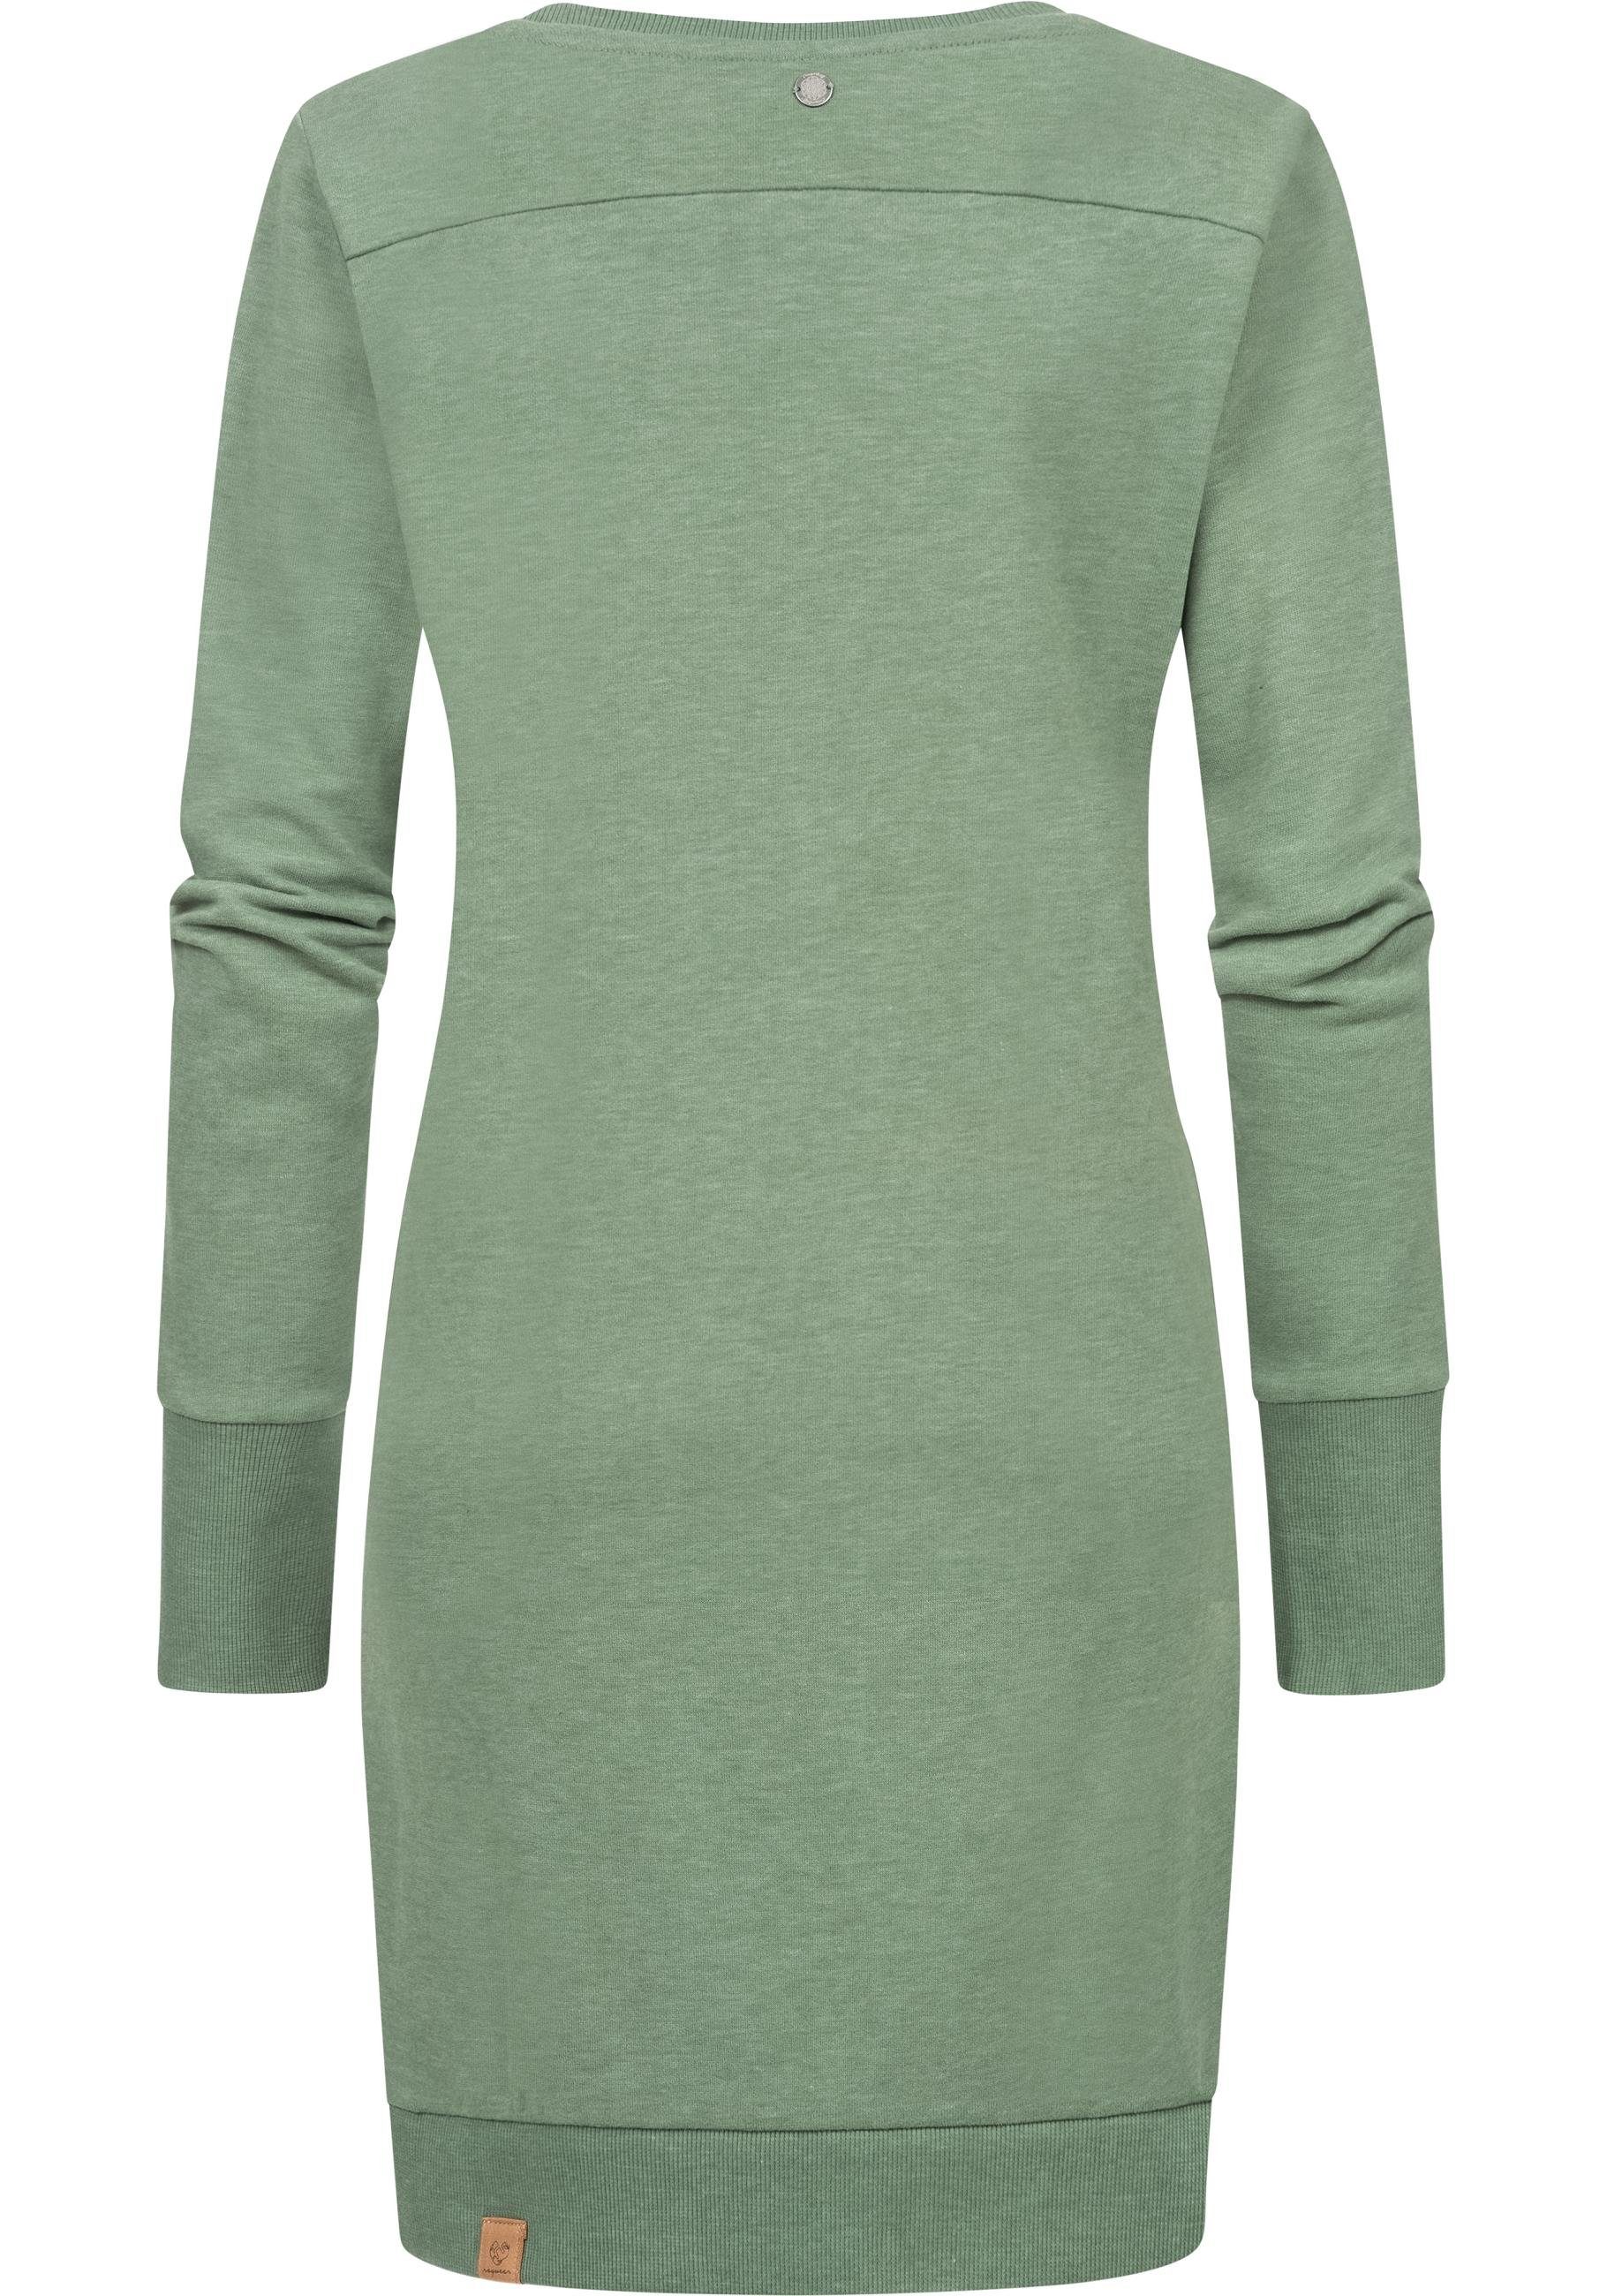 Ragwear Sweatkleid Menita Organic stylisches Langarmkleid für den Winter,  Unifarbenes Minikleid mit top Länge bis zu den Oberschenkeln